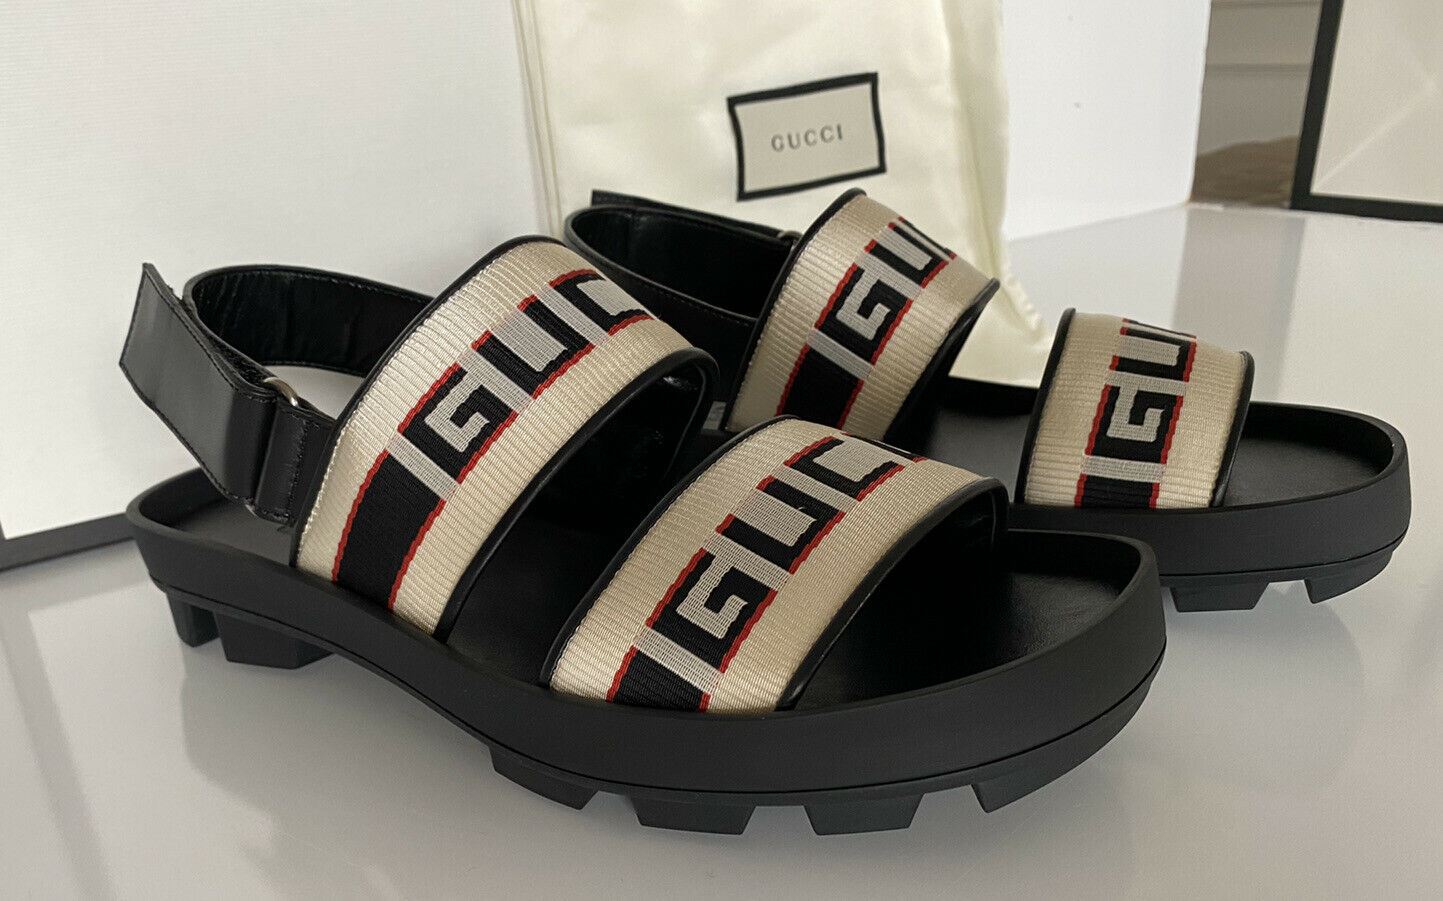 Мужские сандалии NIB Gucci черные/белые из парусины/кожи 8 США (Gucci 7.5), Италия 523769 